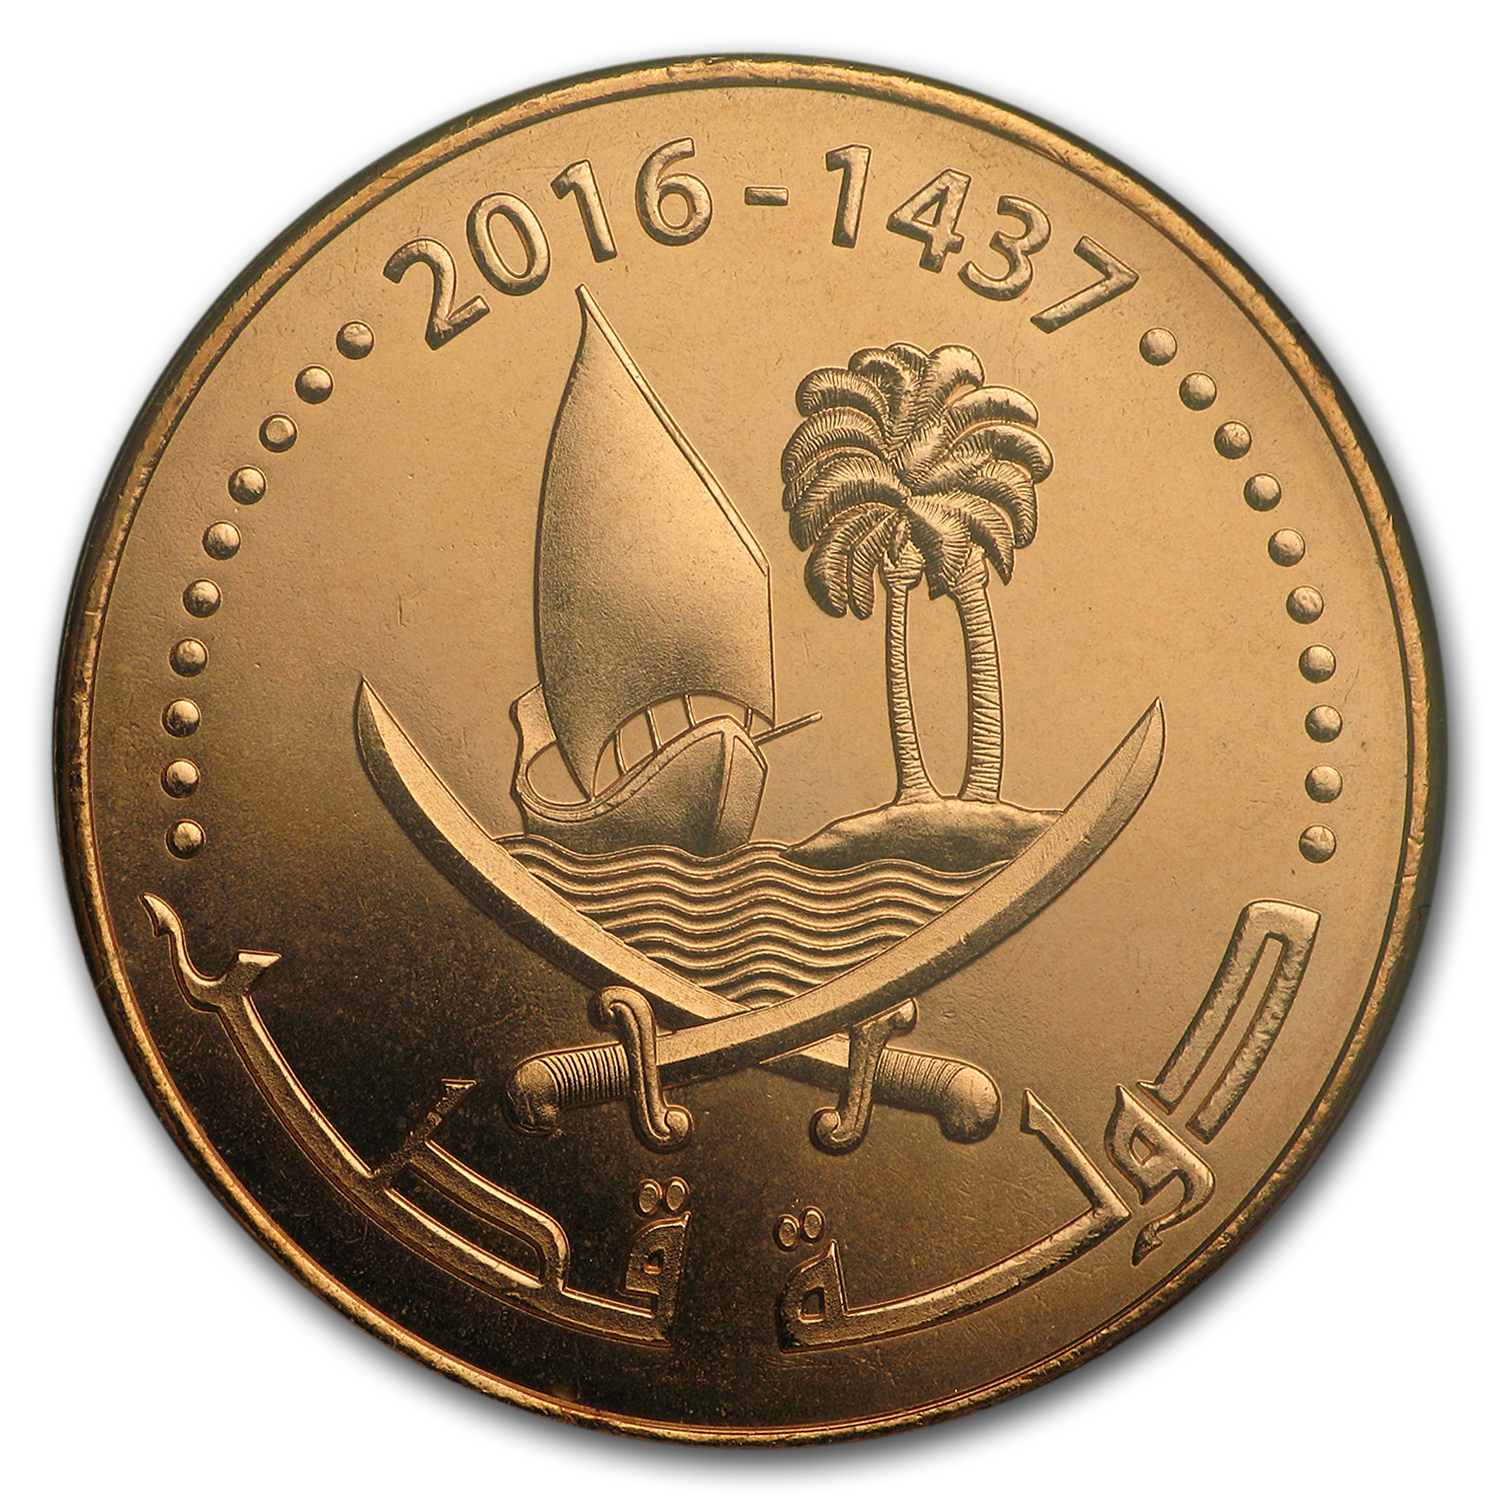 dirham coins denominations